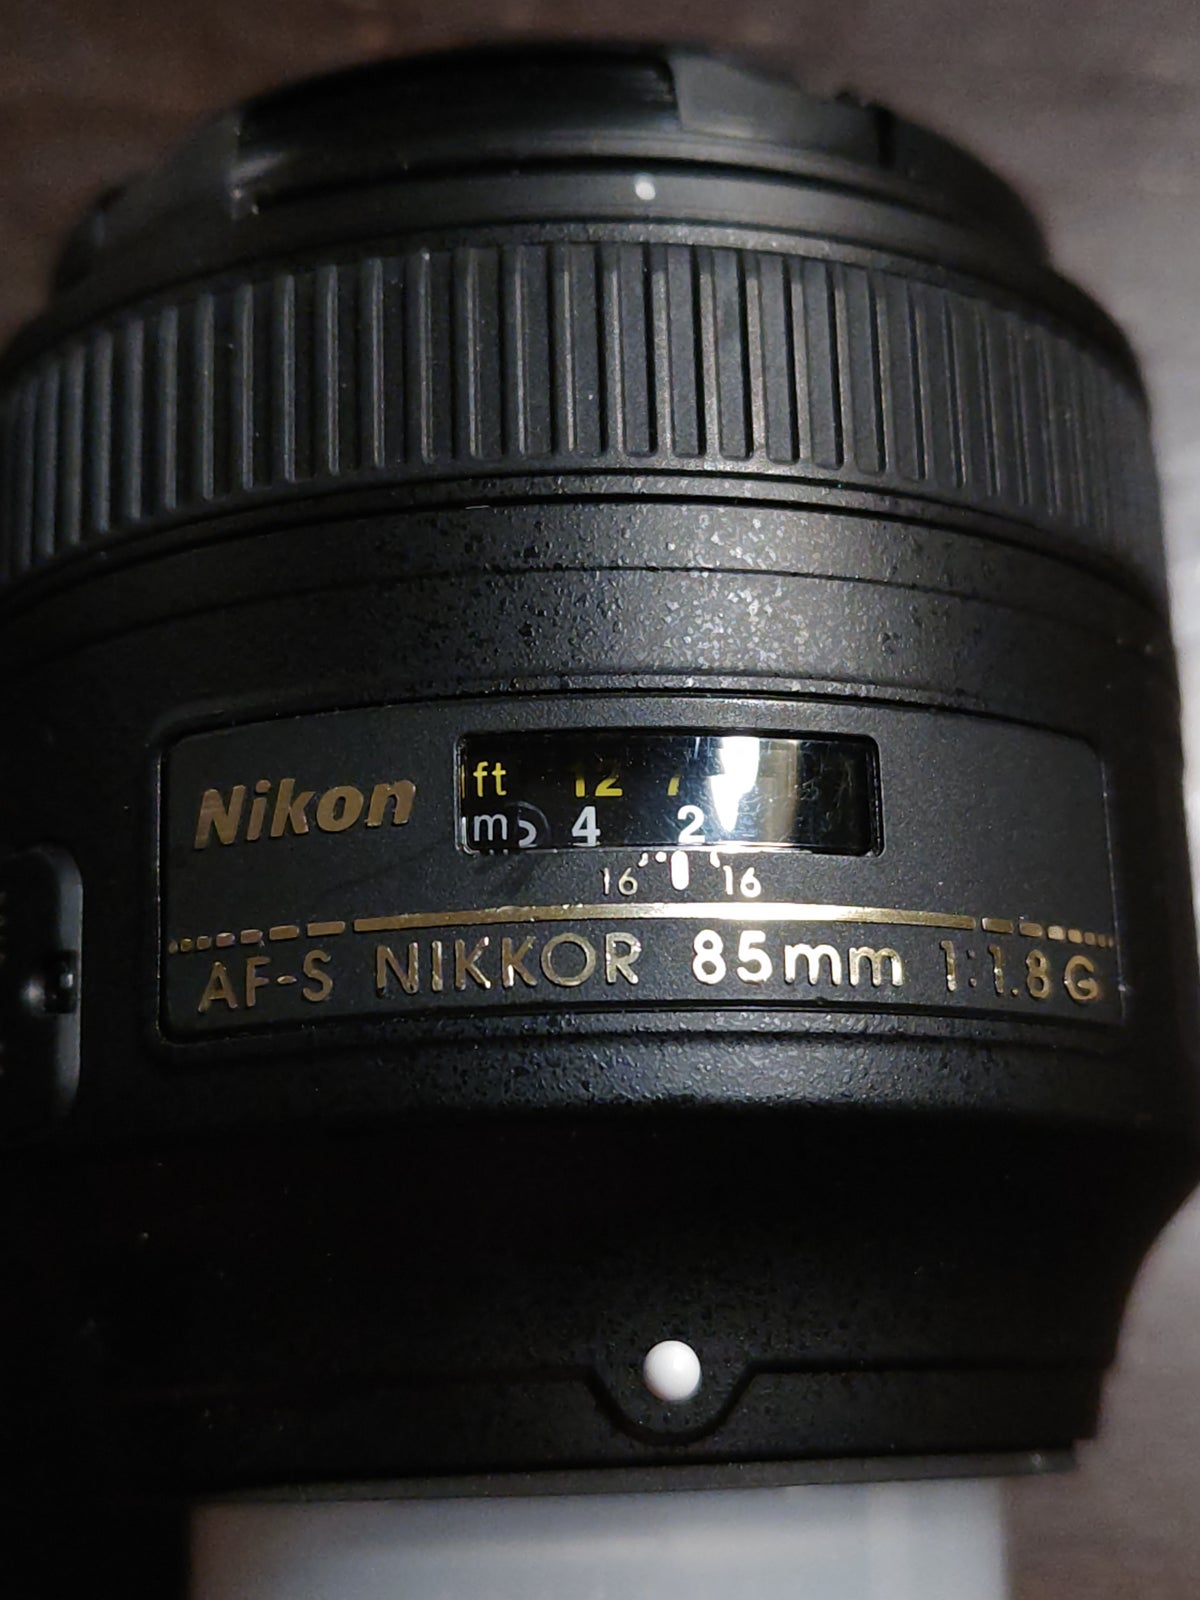 Tele, Nikon, Af-s 85mm 1.8G